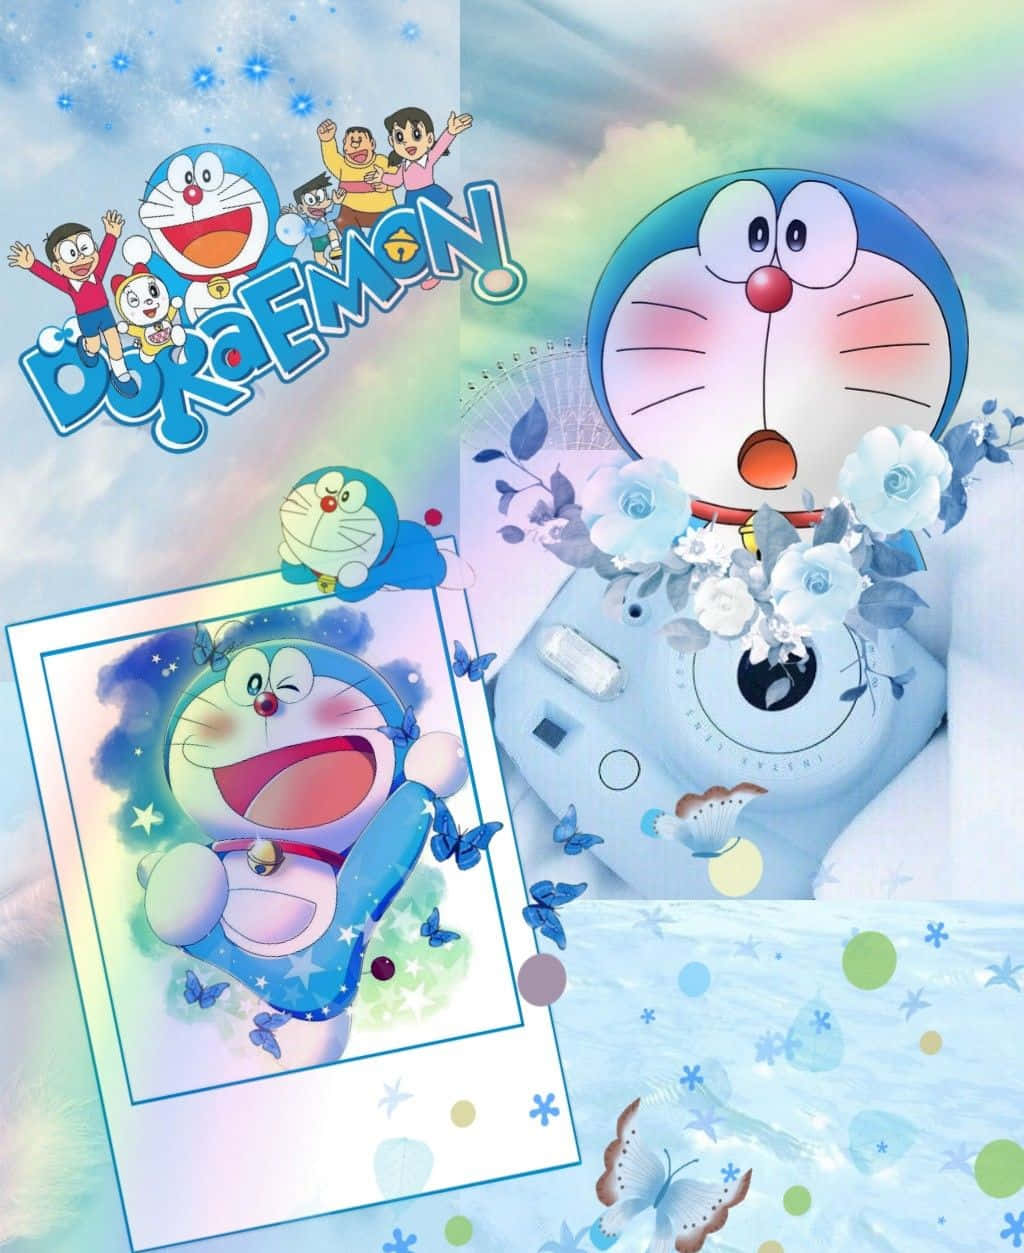 Doraemonsneugieriges Gesicht